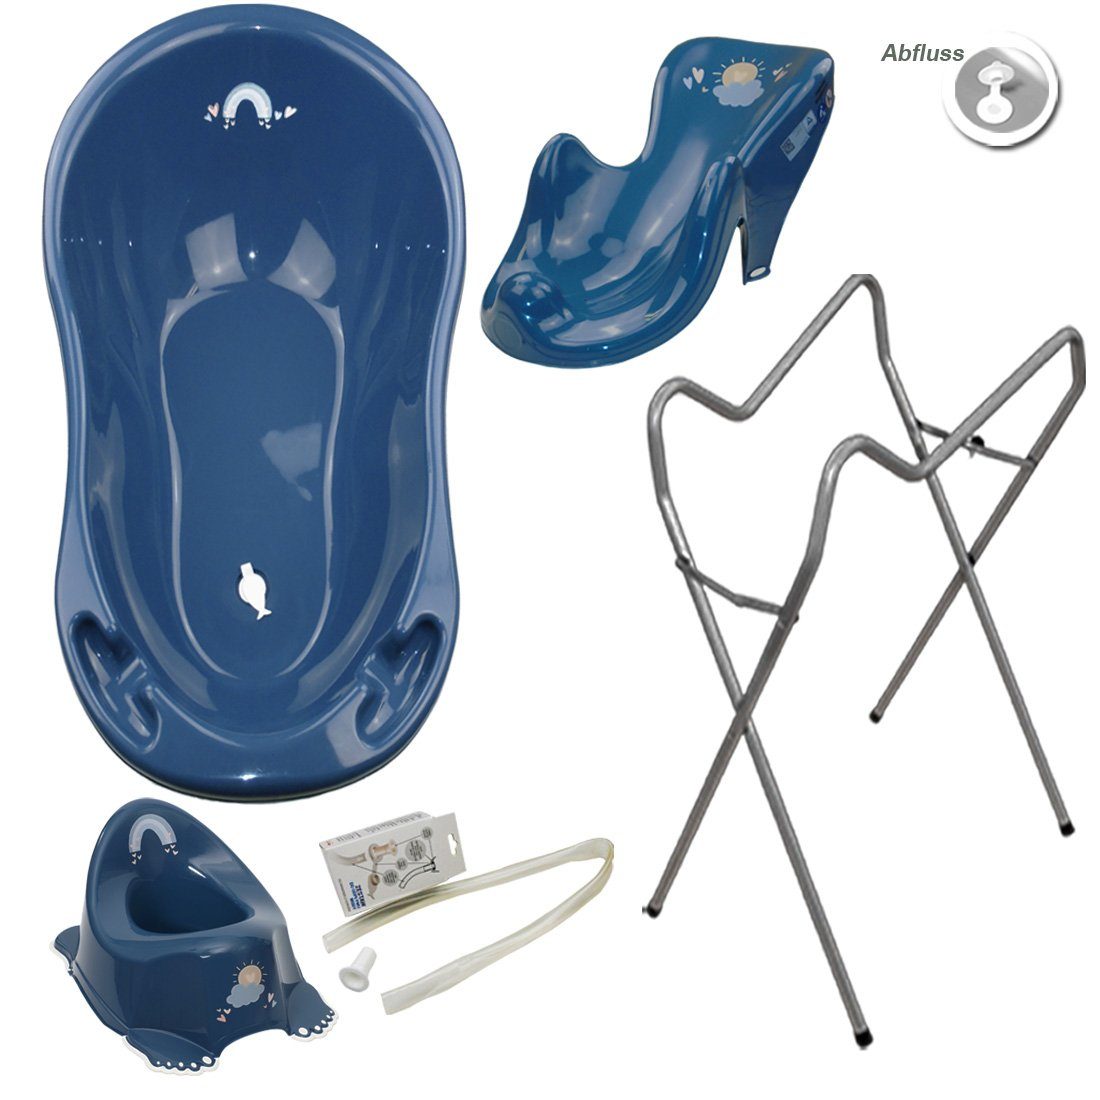 Tega-Baby Babybadewanne 4 Teile SET AB- METEO Blau + Ständer Grau -Abflussset Babybadeset, (Made in Europe Premium.set), Wanne + Sitz + Töpfchen + Ablauf Set+ Ständer